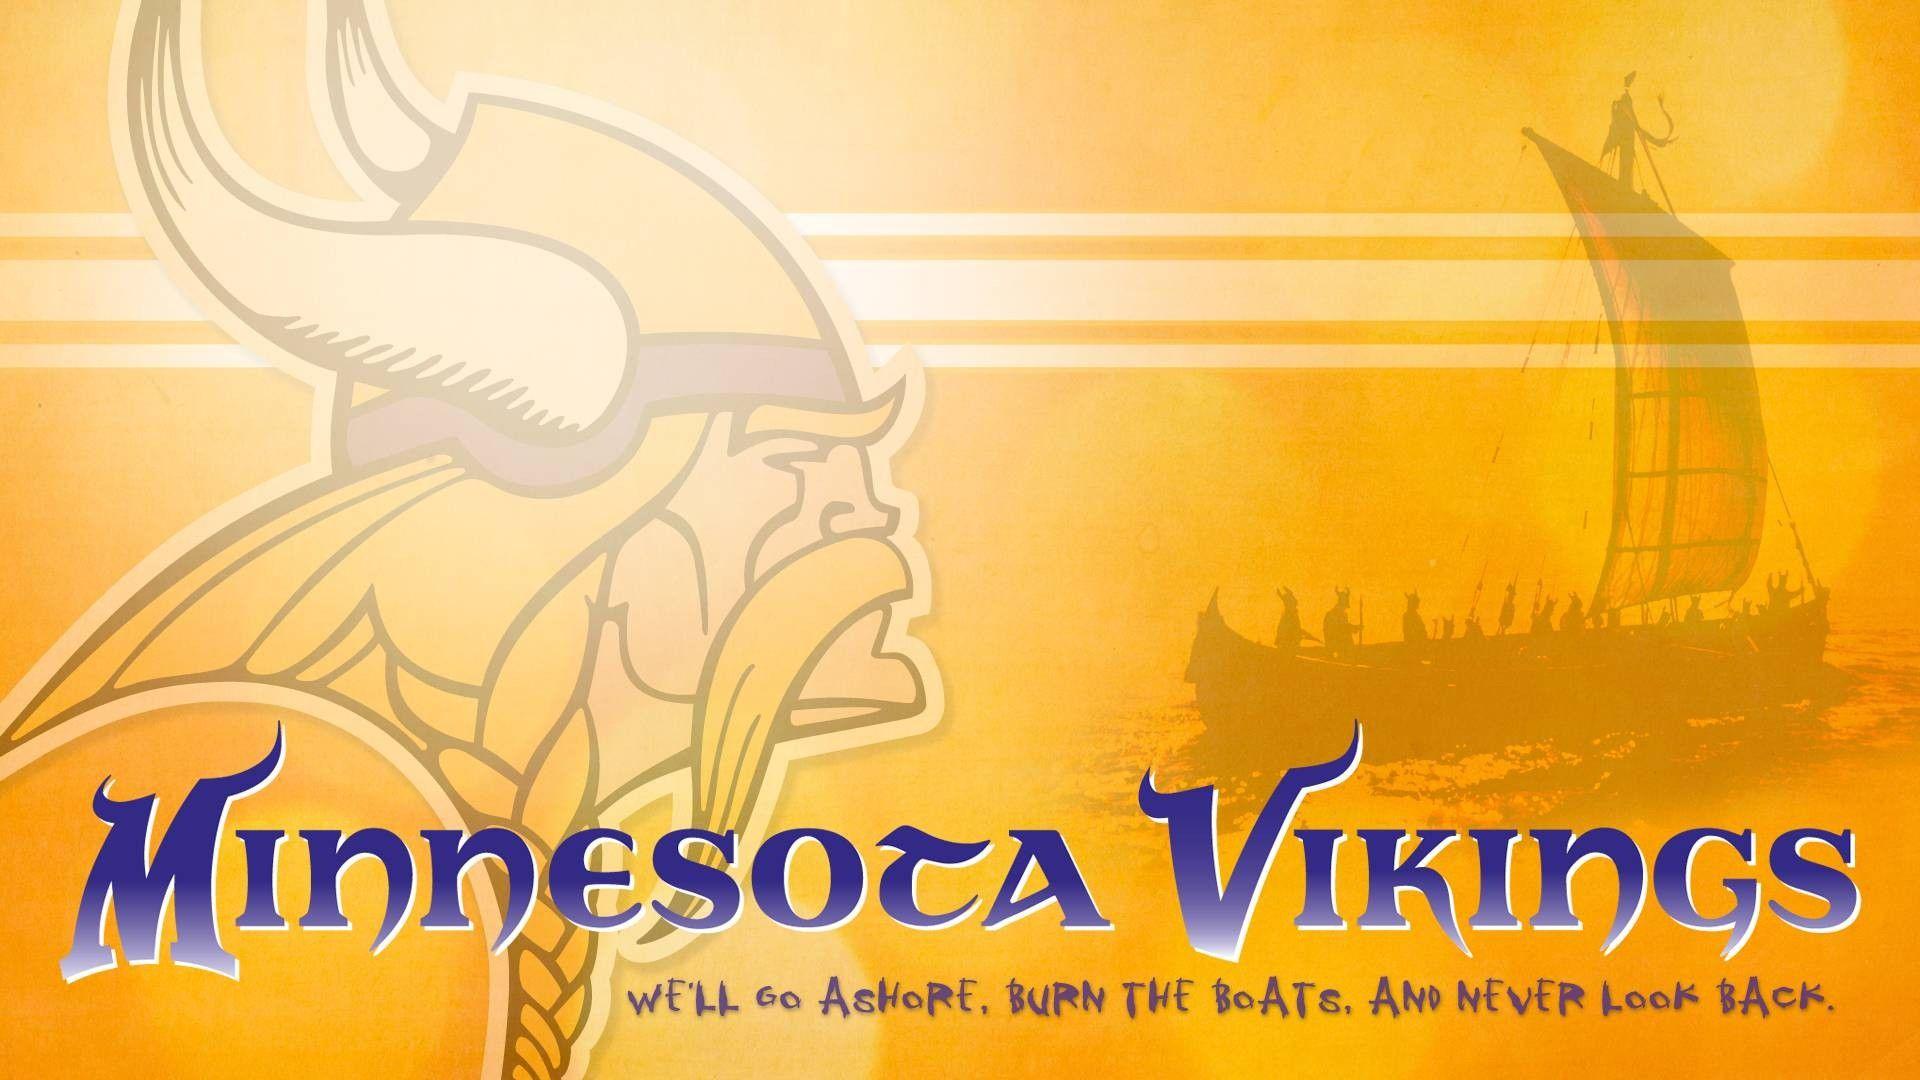 Minnesota Vikings 1080p Photo. Beautiful image HD Picture